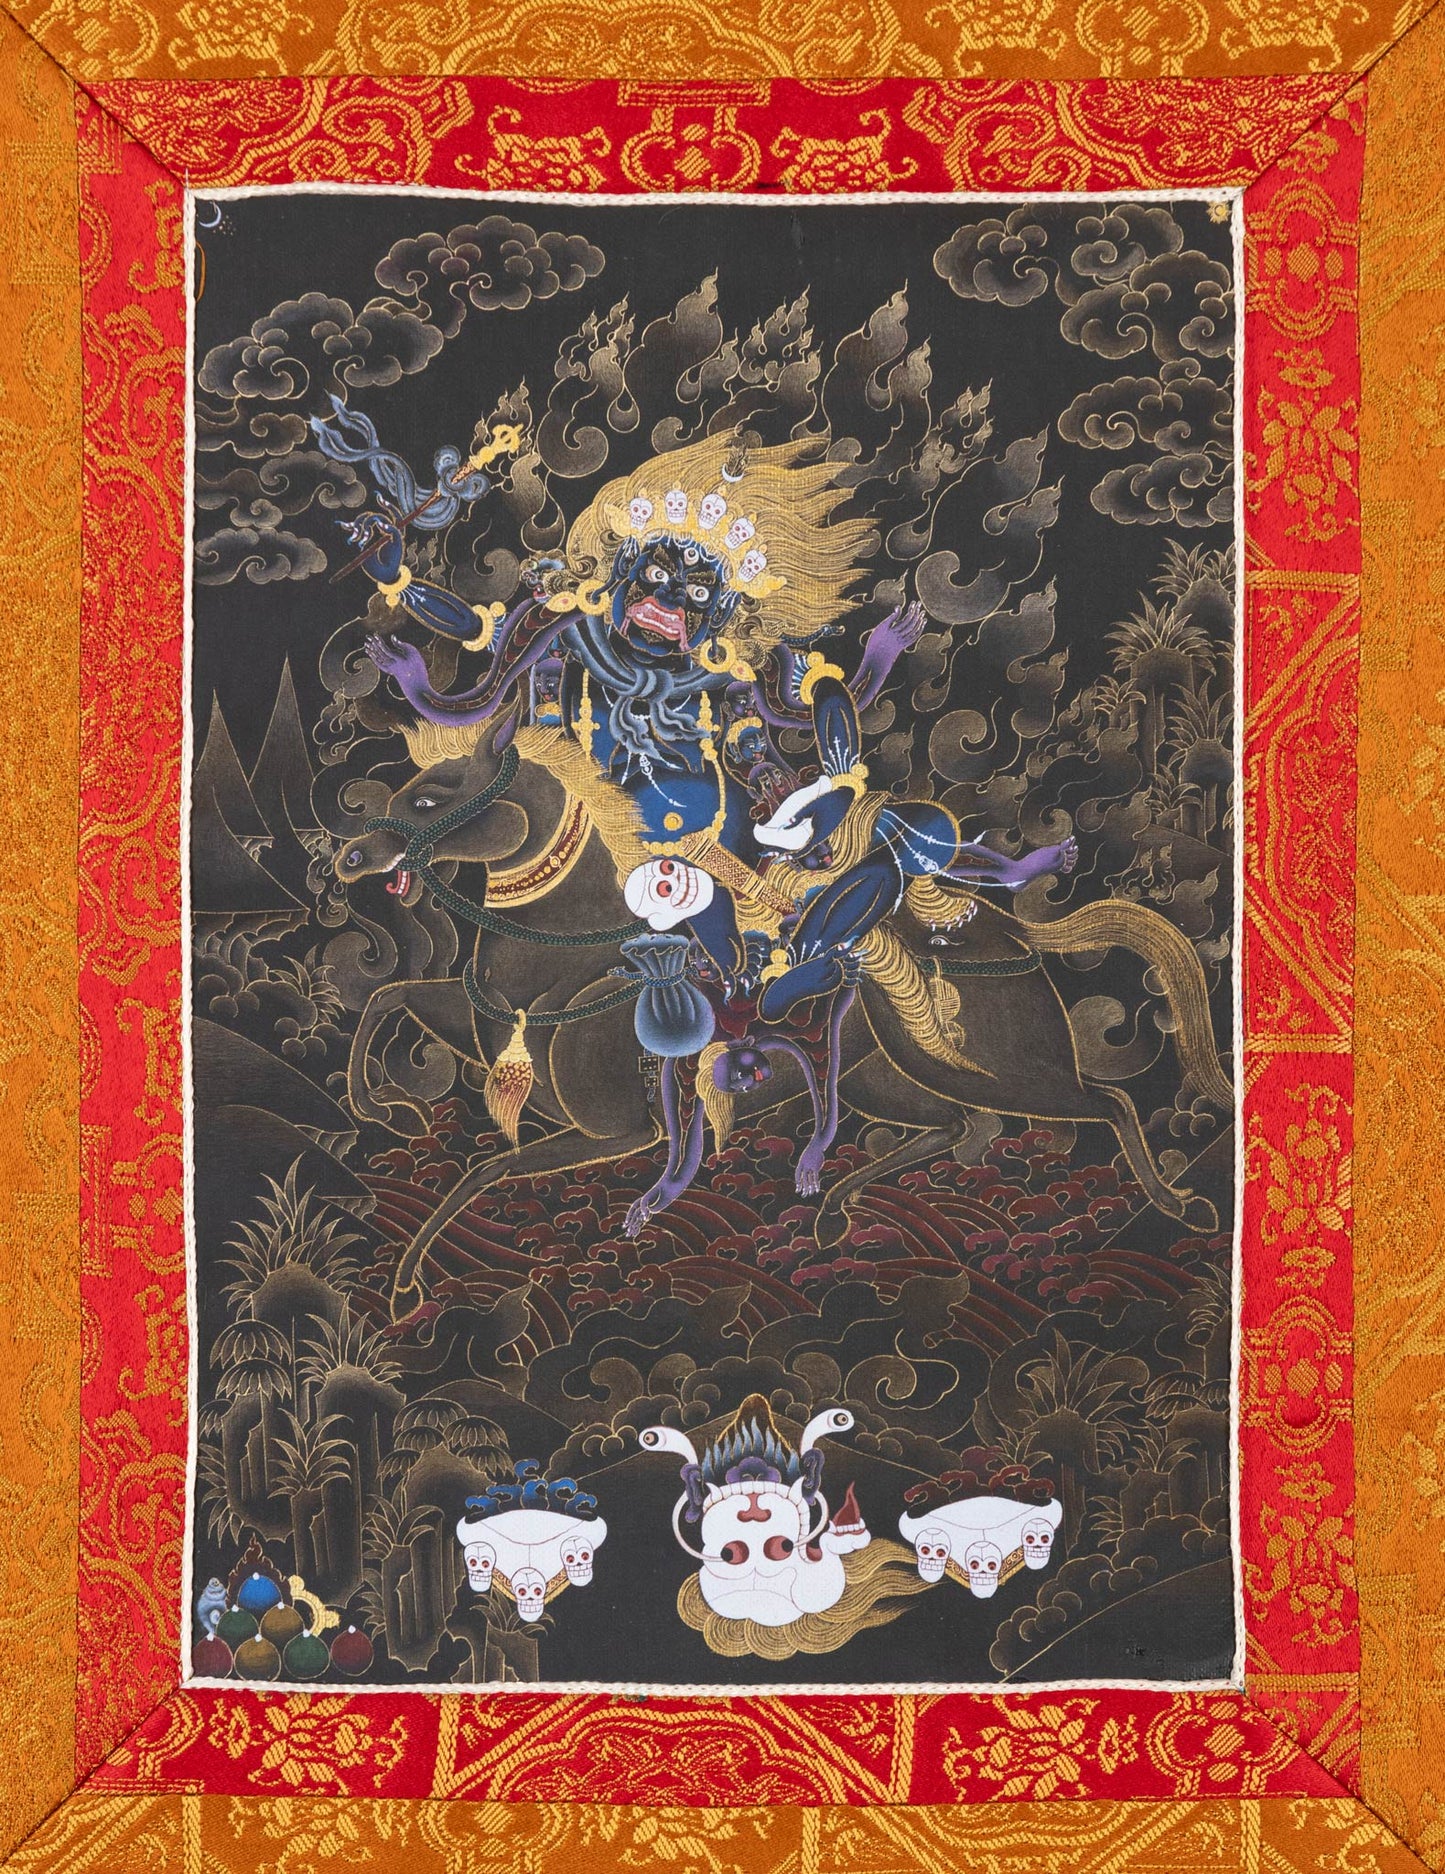 Palden Lhamo Thangka II